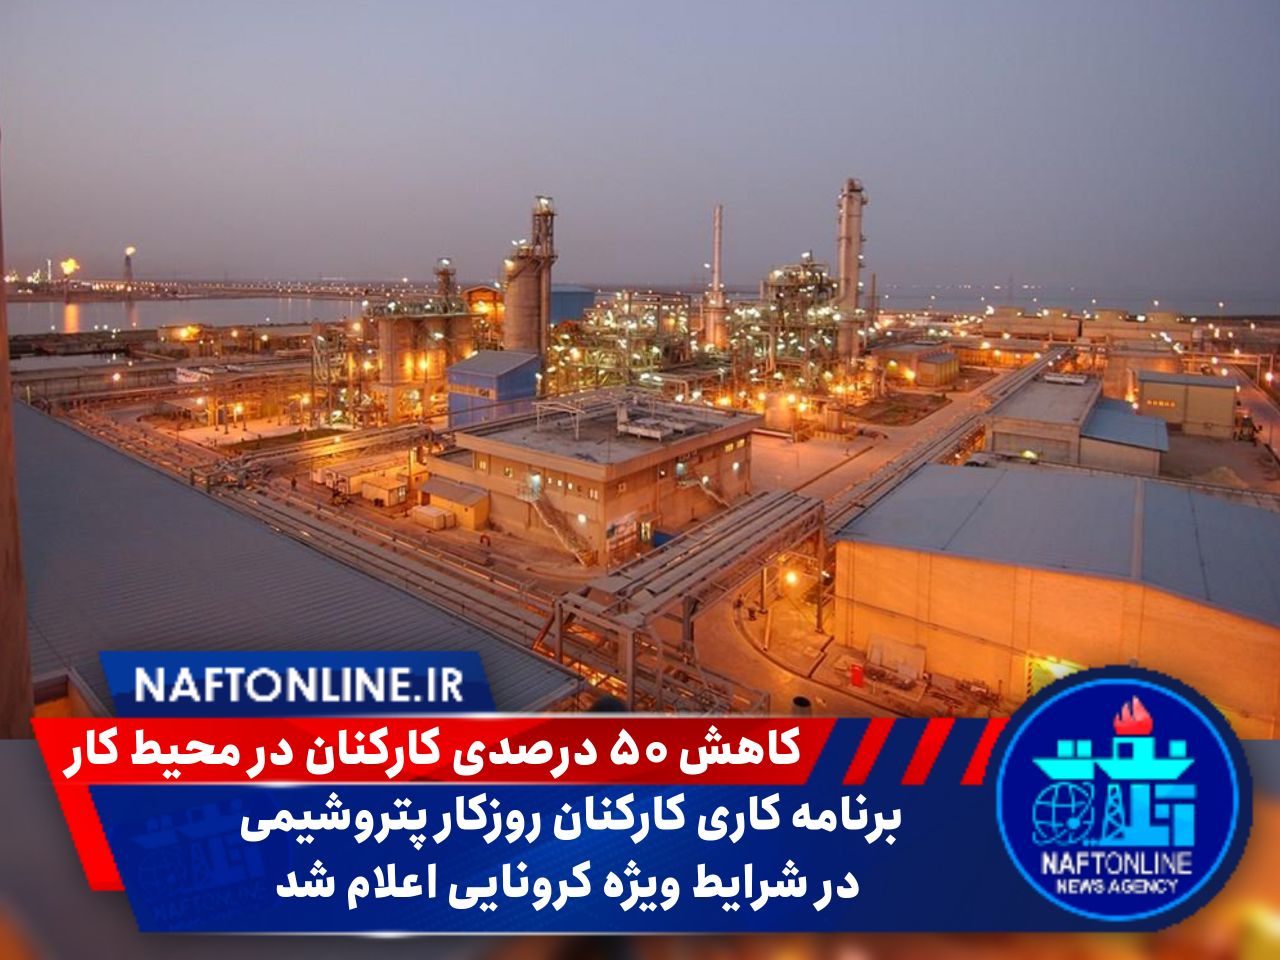 حضور کارکنان نفت و پتروشیمی خوزستان در شرایط کرونایی | نفت آنلاین